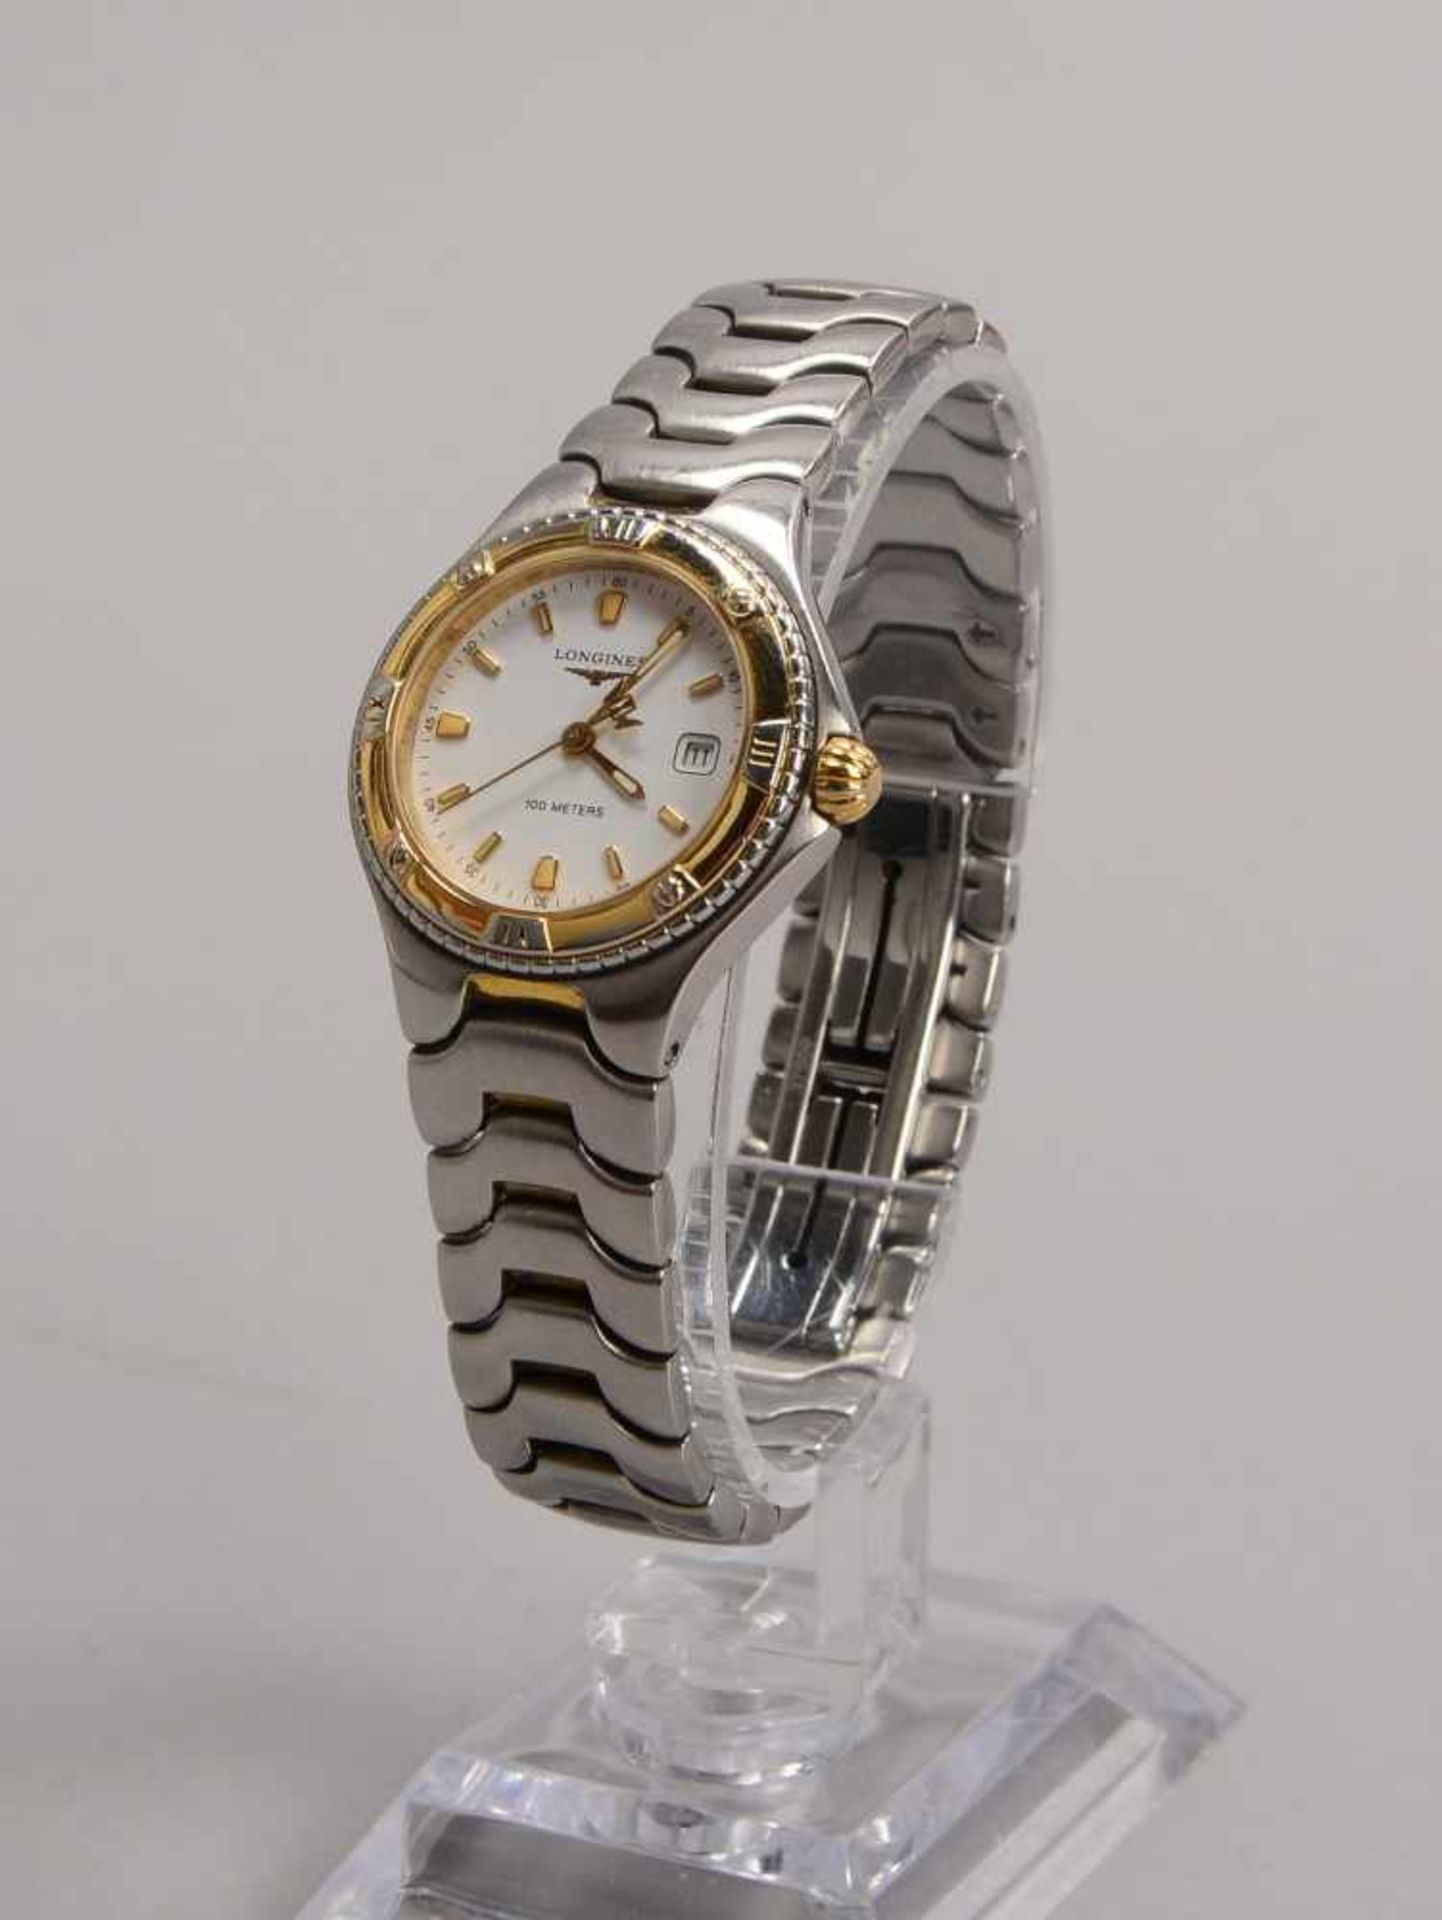 Damen-Armbanduhr, Longines, Edelstahlgehäuse/teilweise vergoldet, Quarzwerk, weißes Ziffernblatt mit